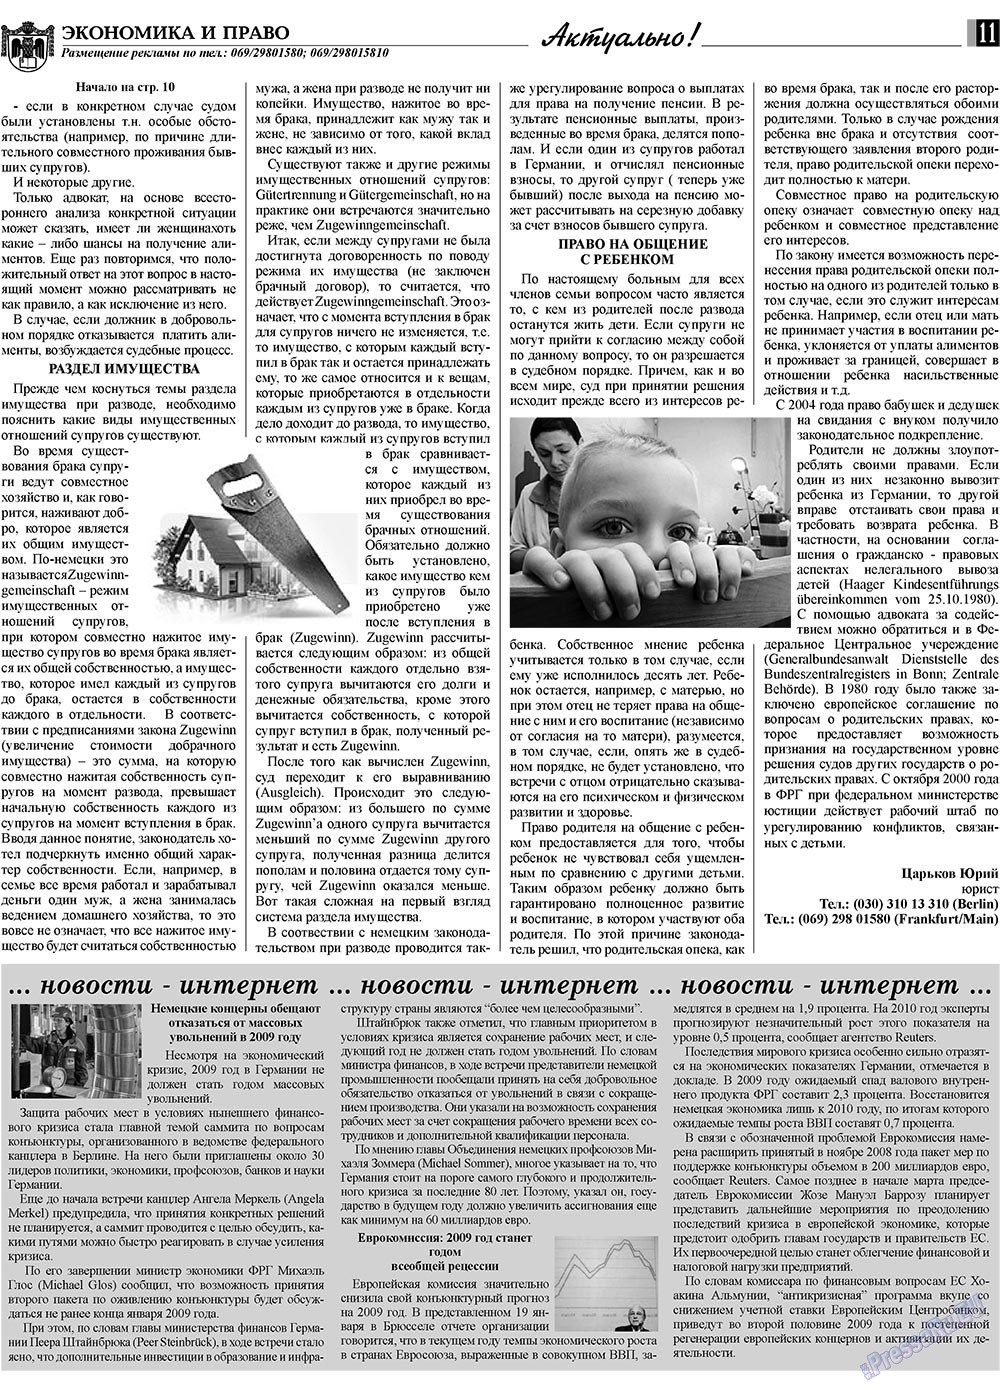 Экономика и право, газета. 2009 №2 стр.11